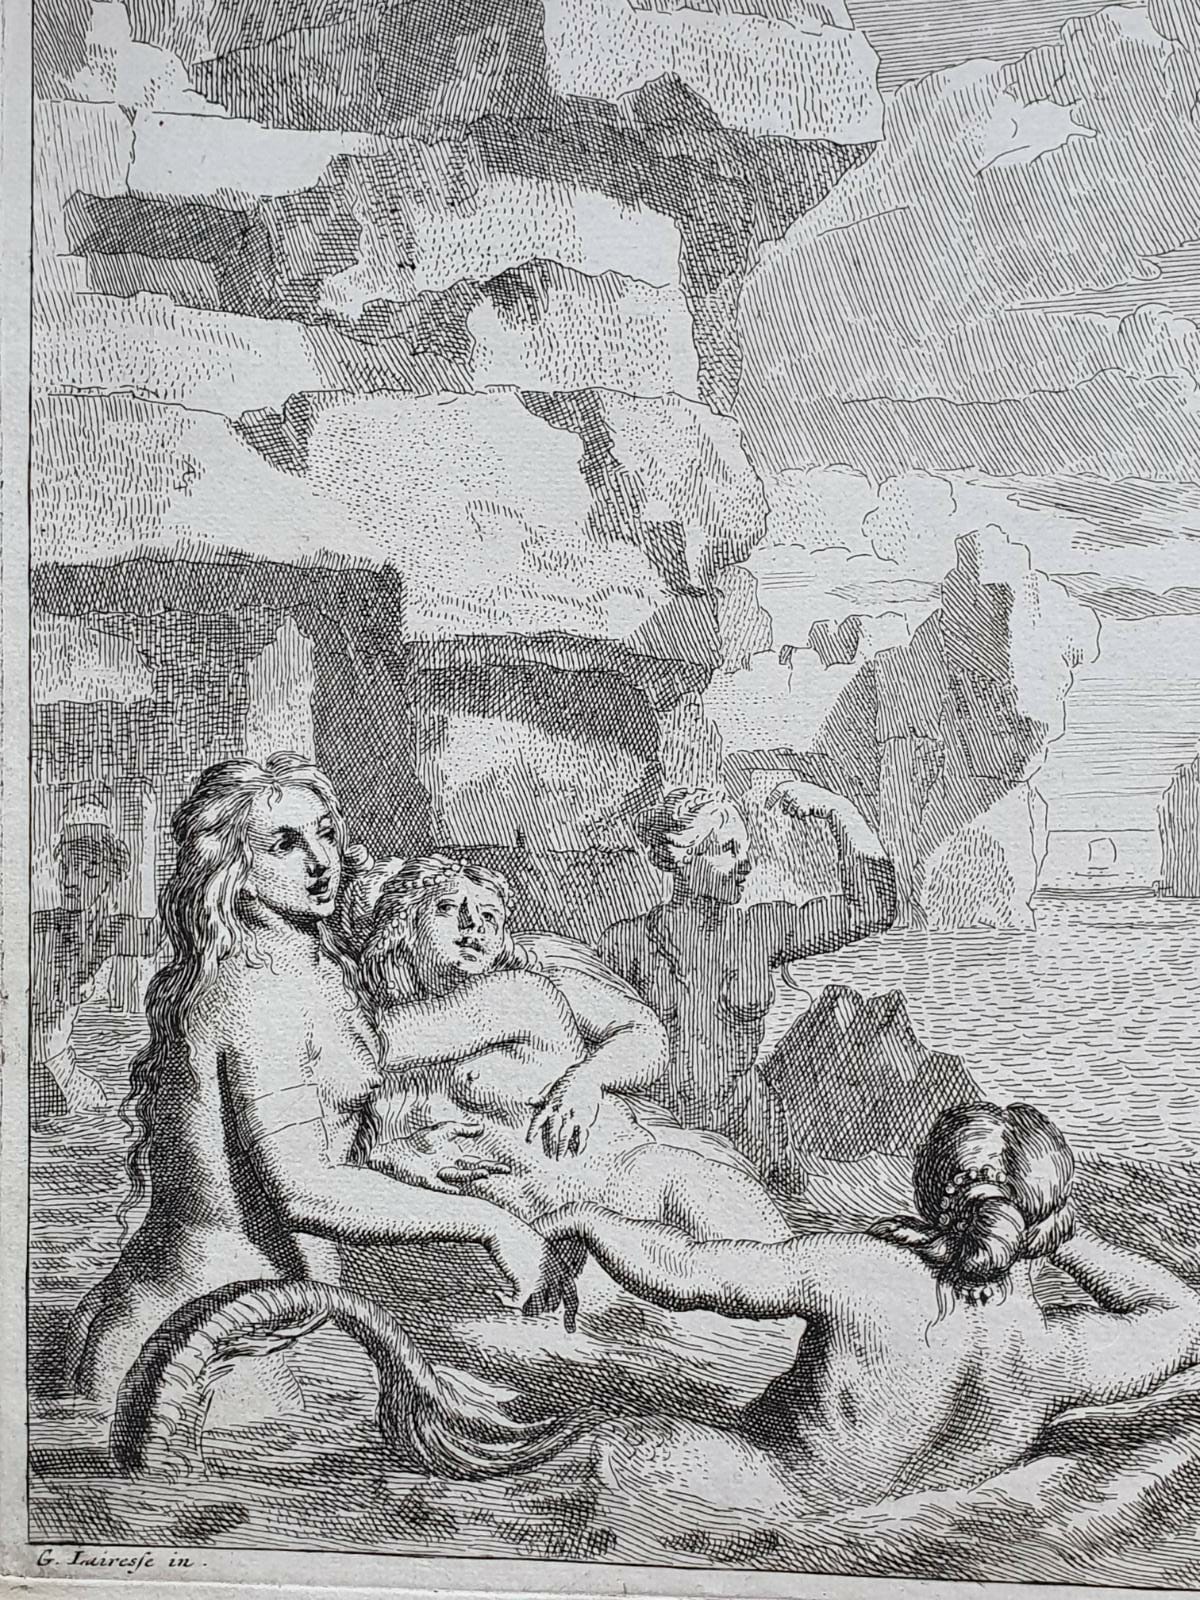 [Antique print, etching/ets] Odysseus and the mermaids/sirens (Odysseus en de sirenen), published 1650-1750.